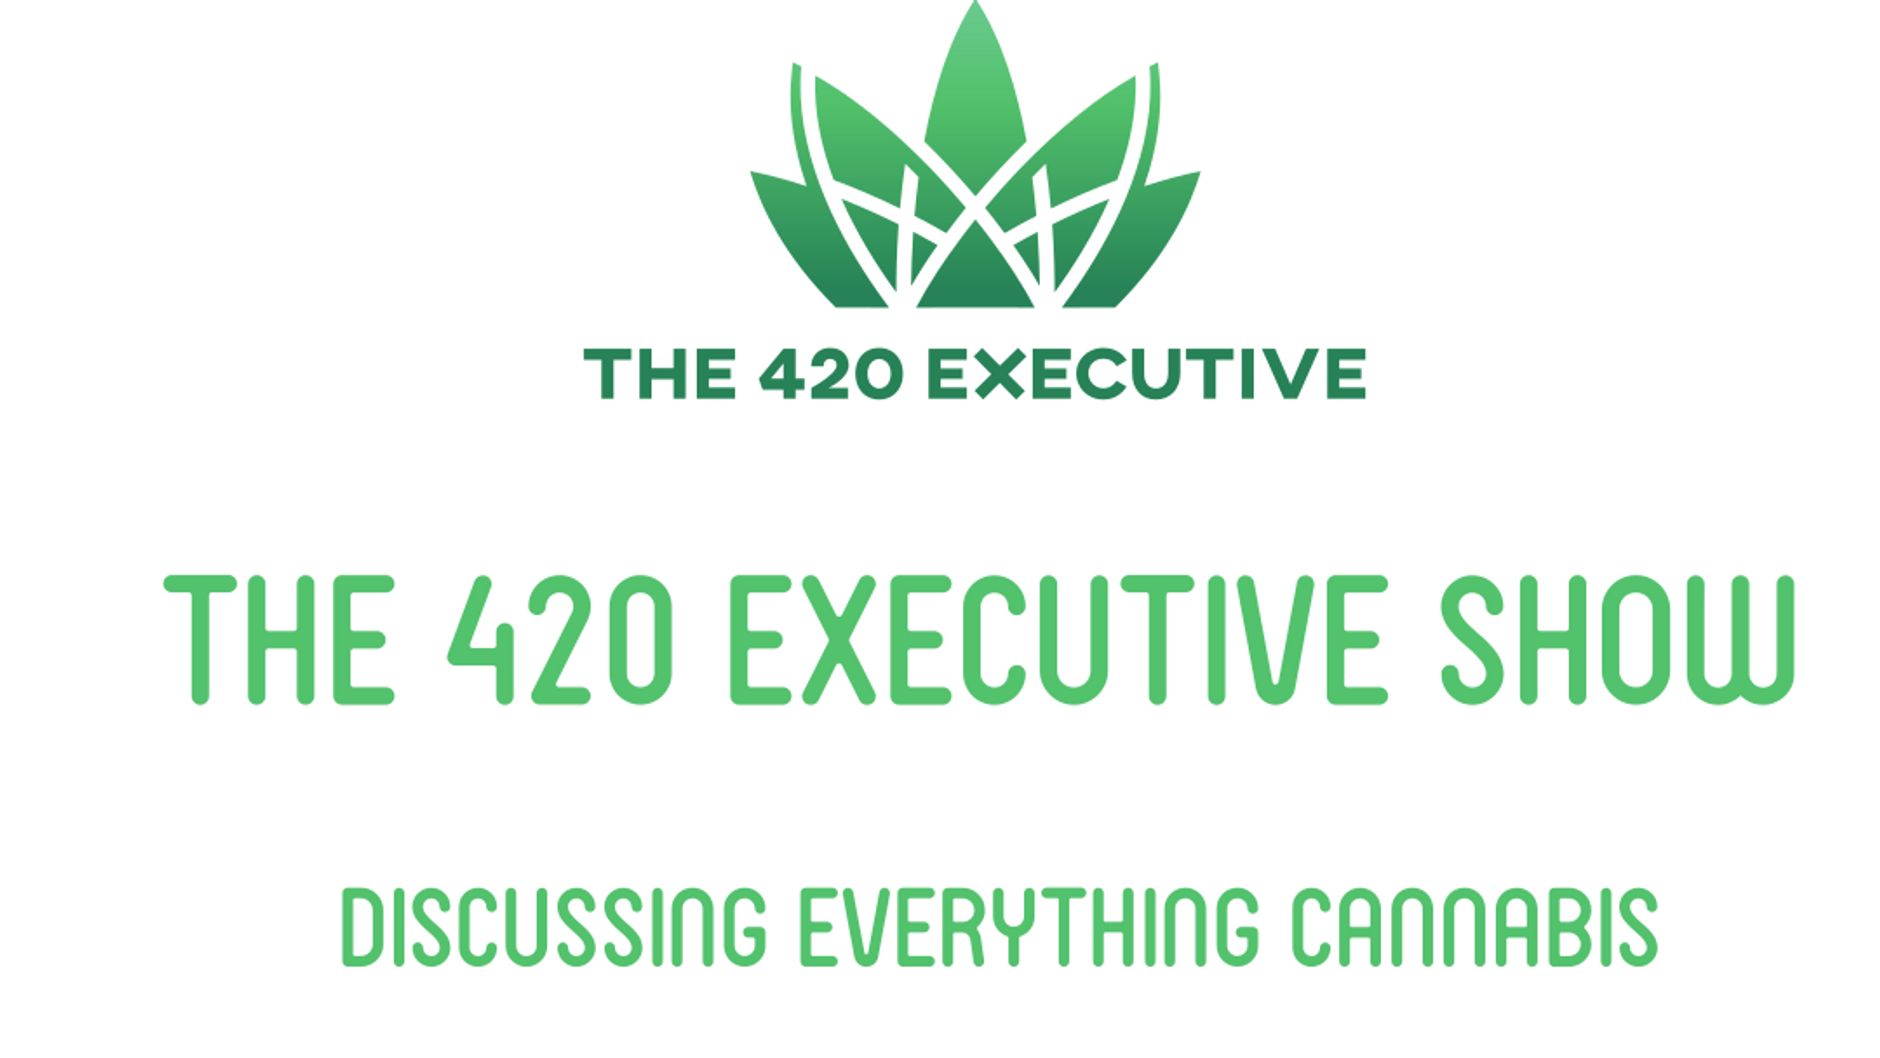 The 420 Executive